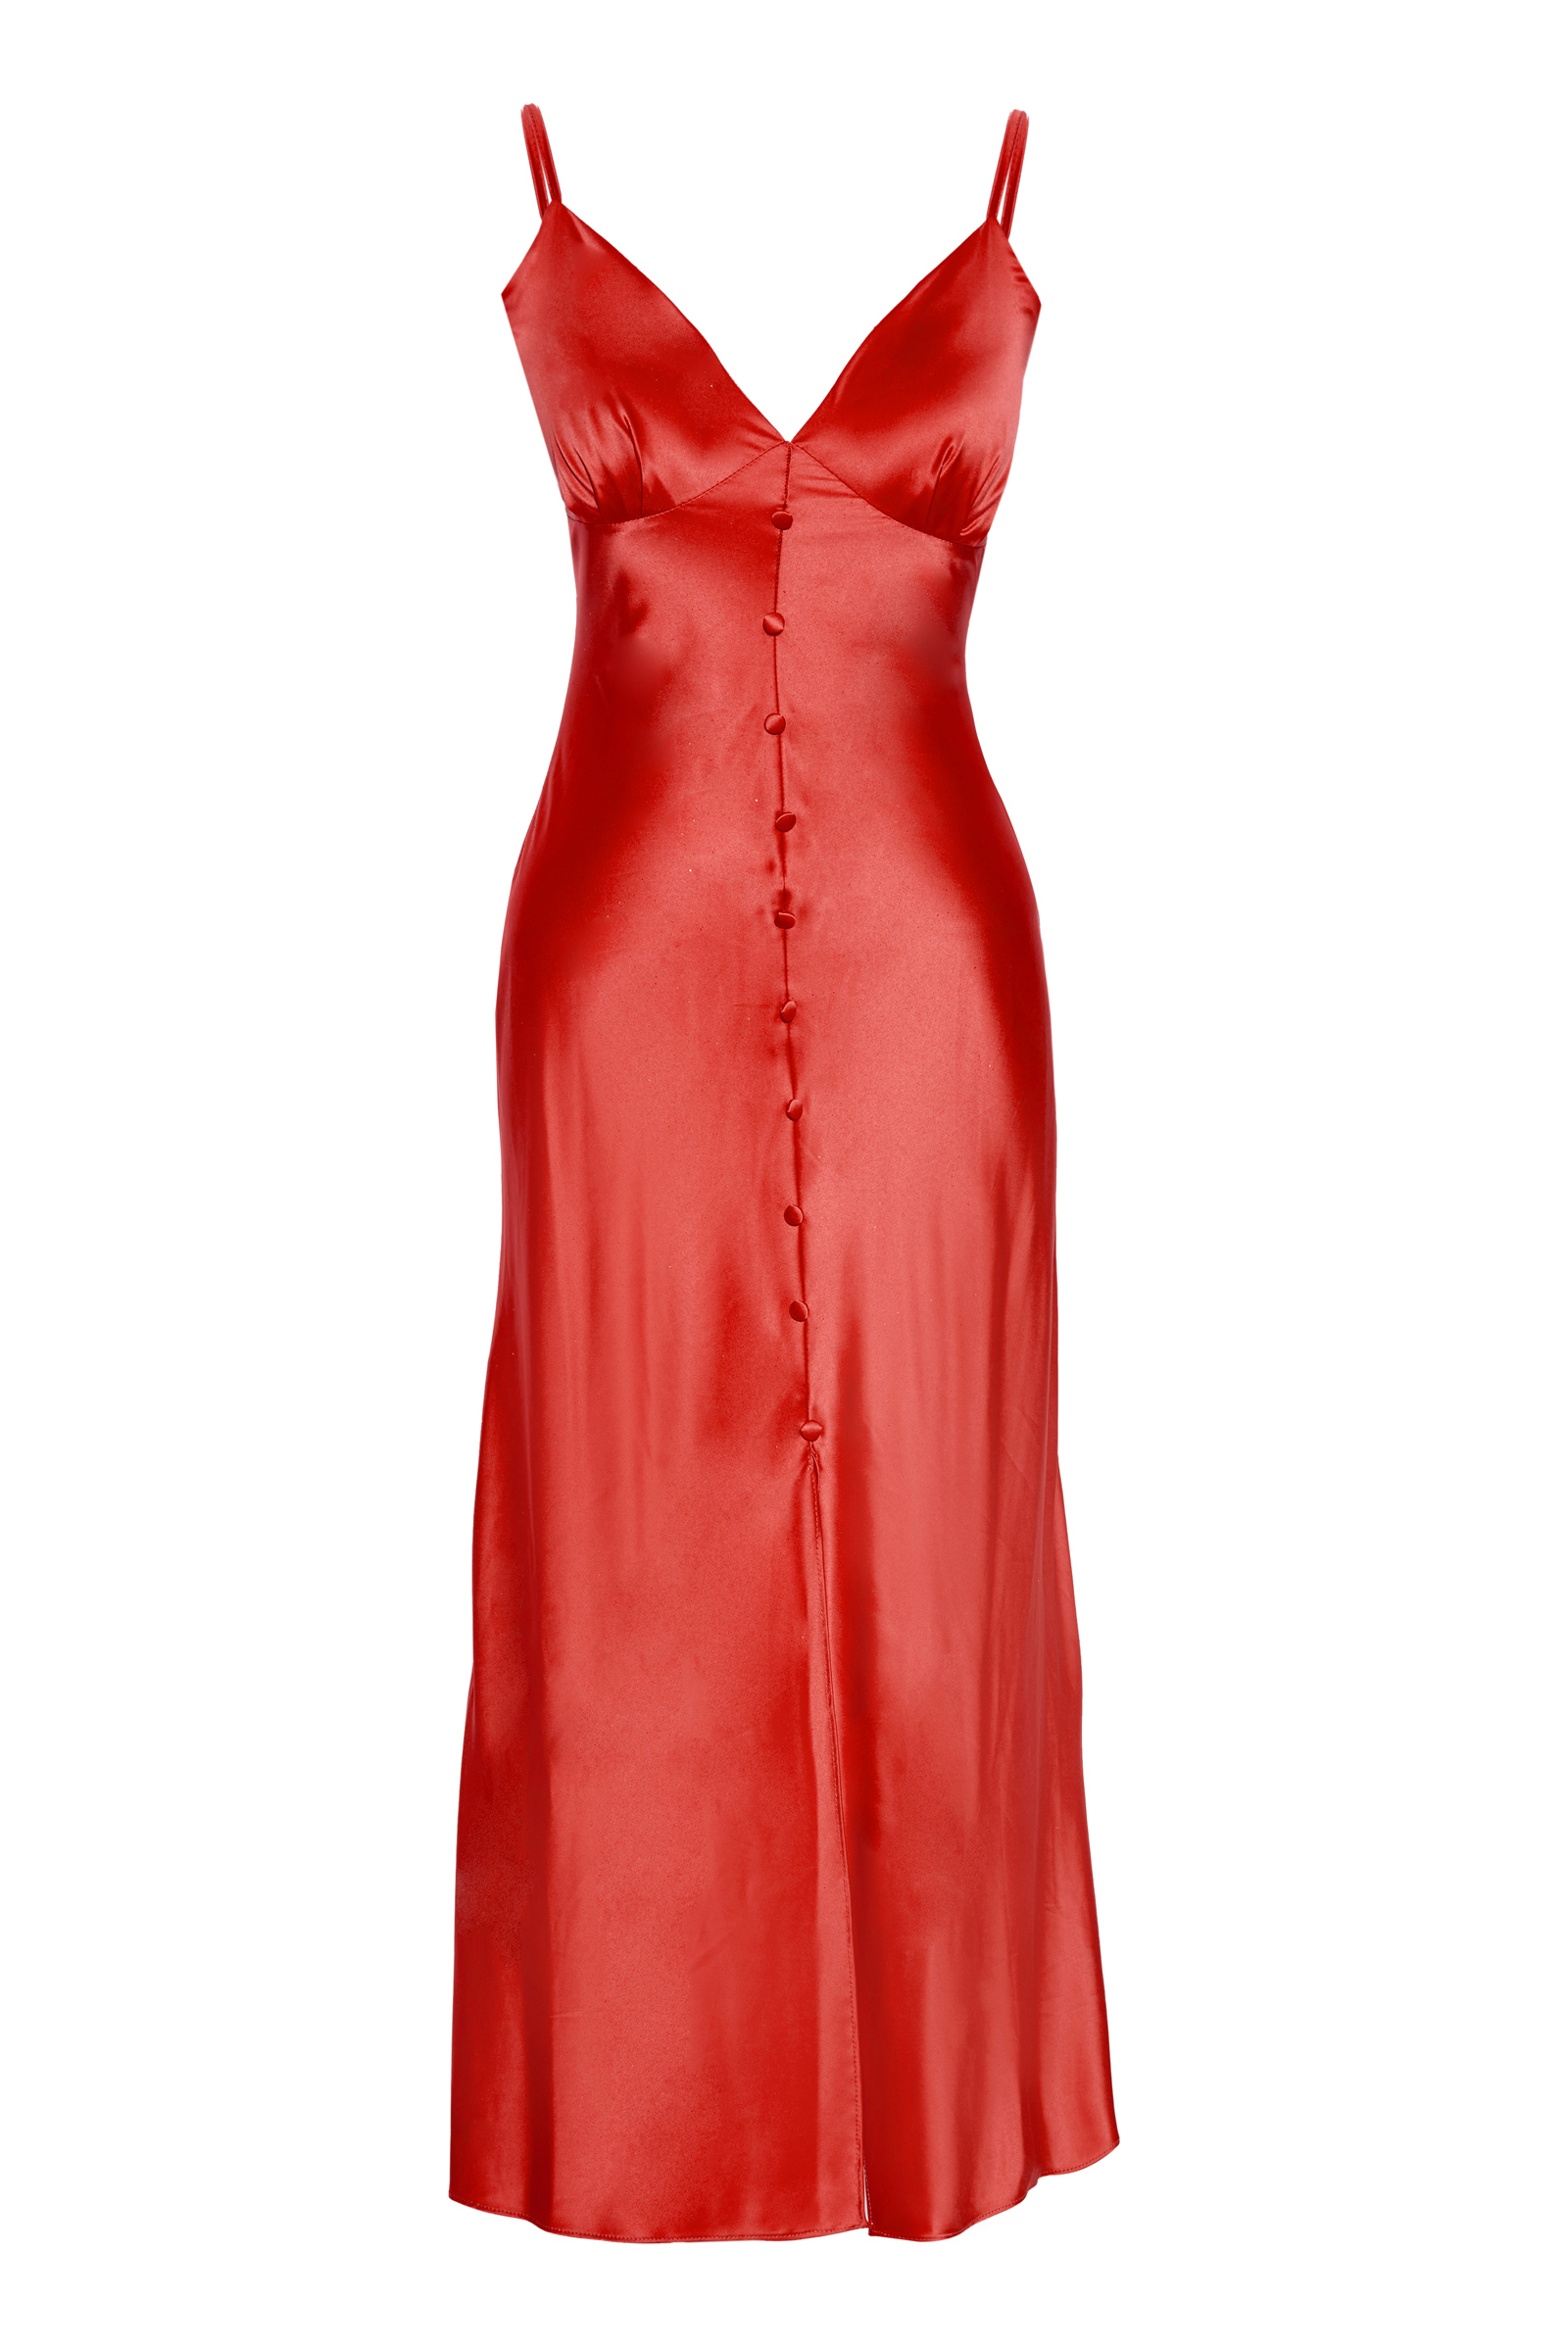 Kırmızı saten kolsuz orta boy elbise